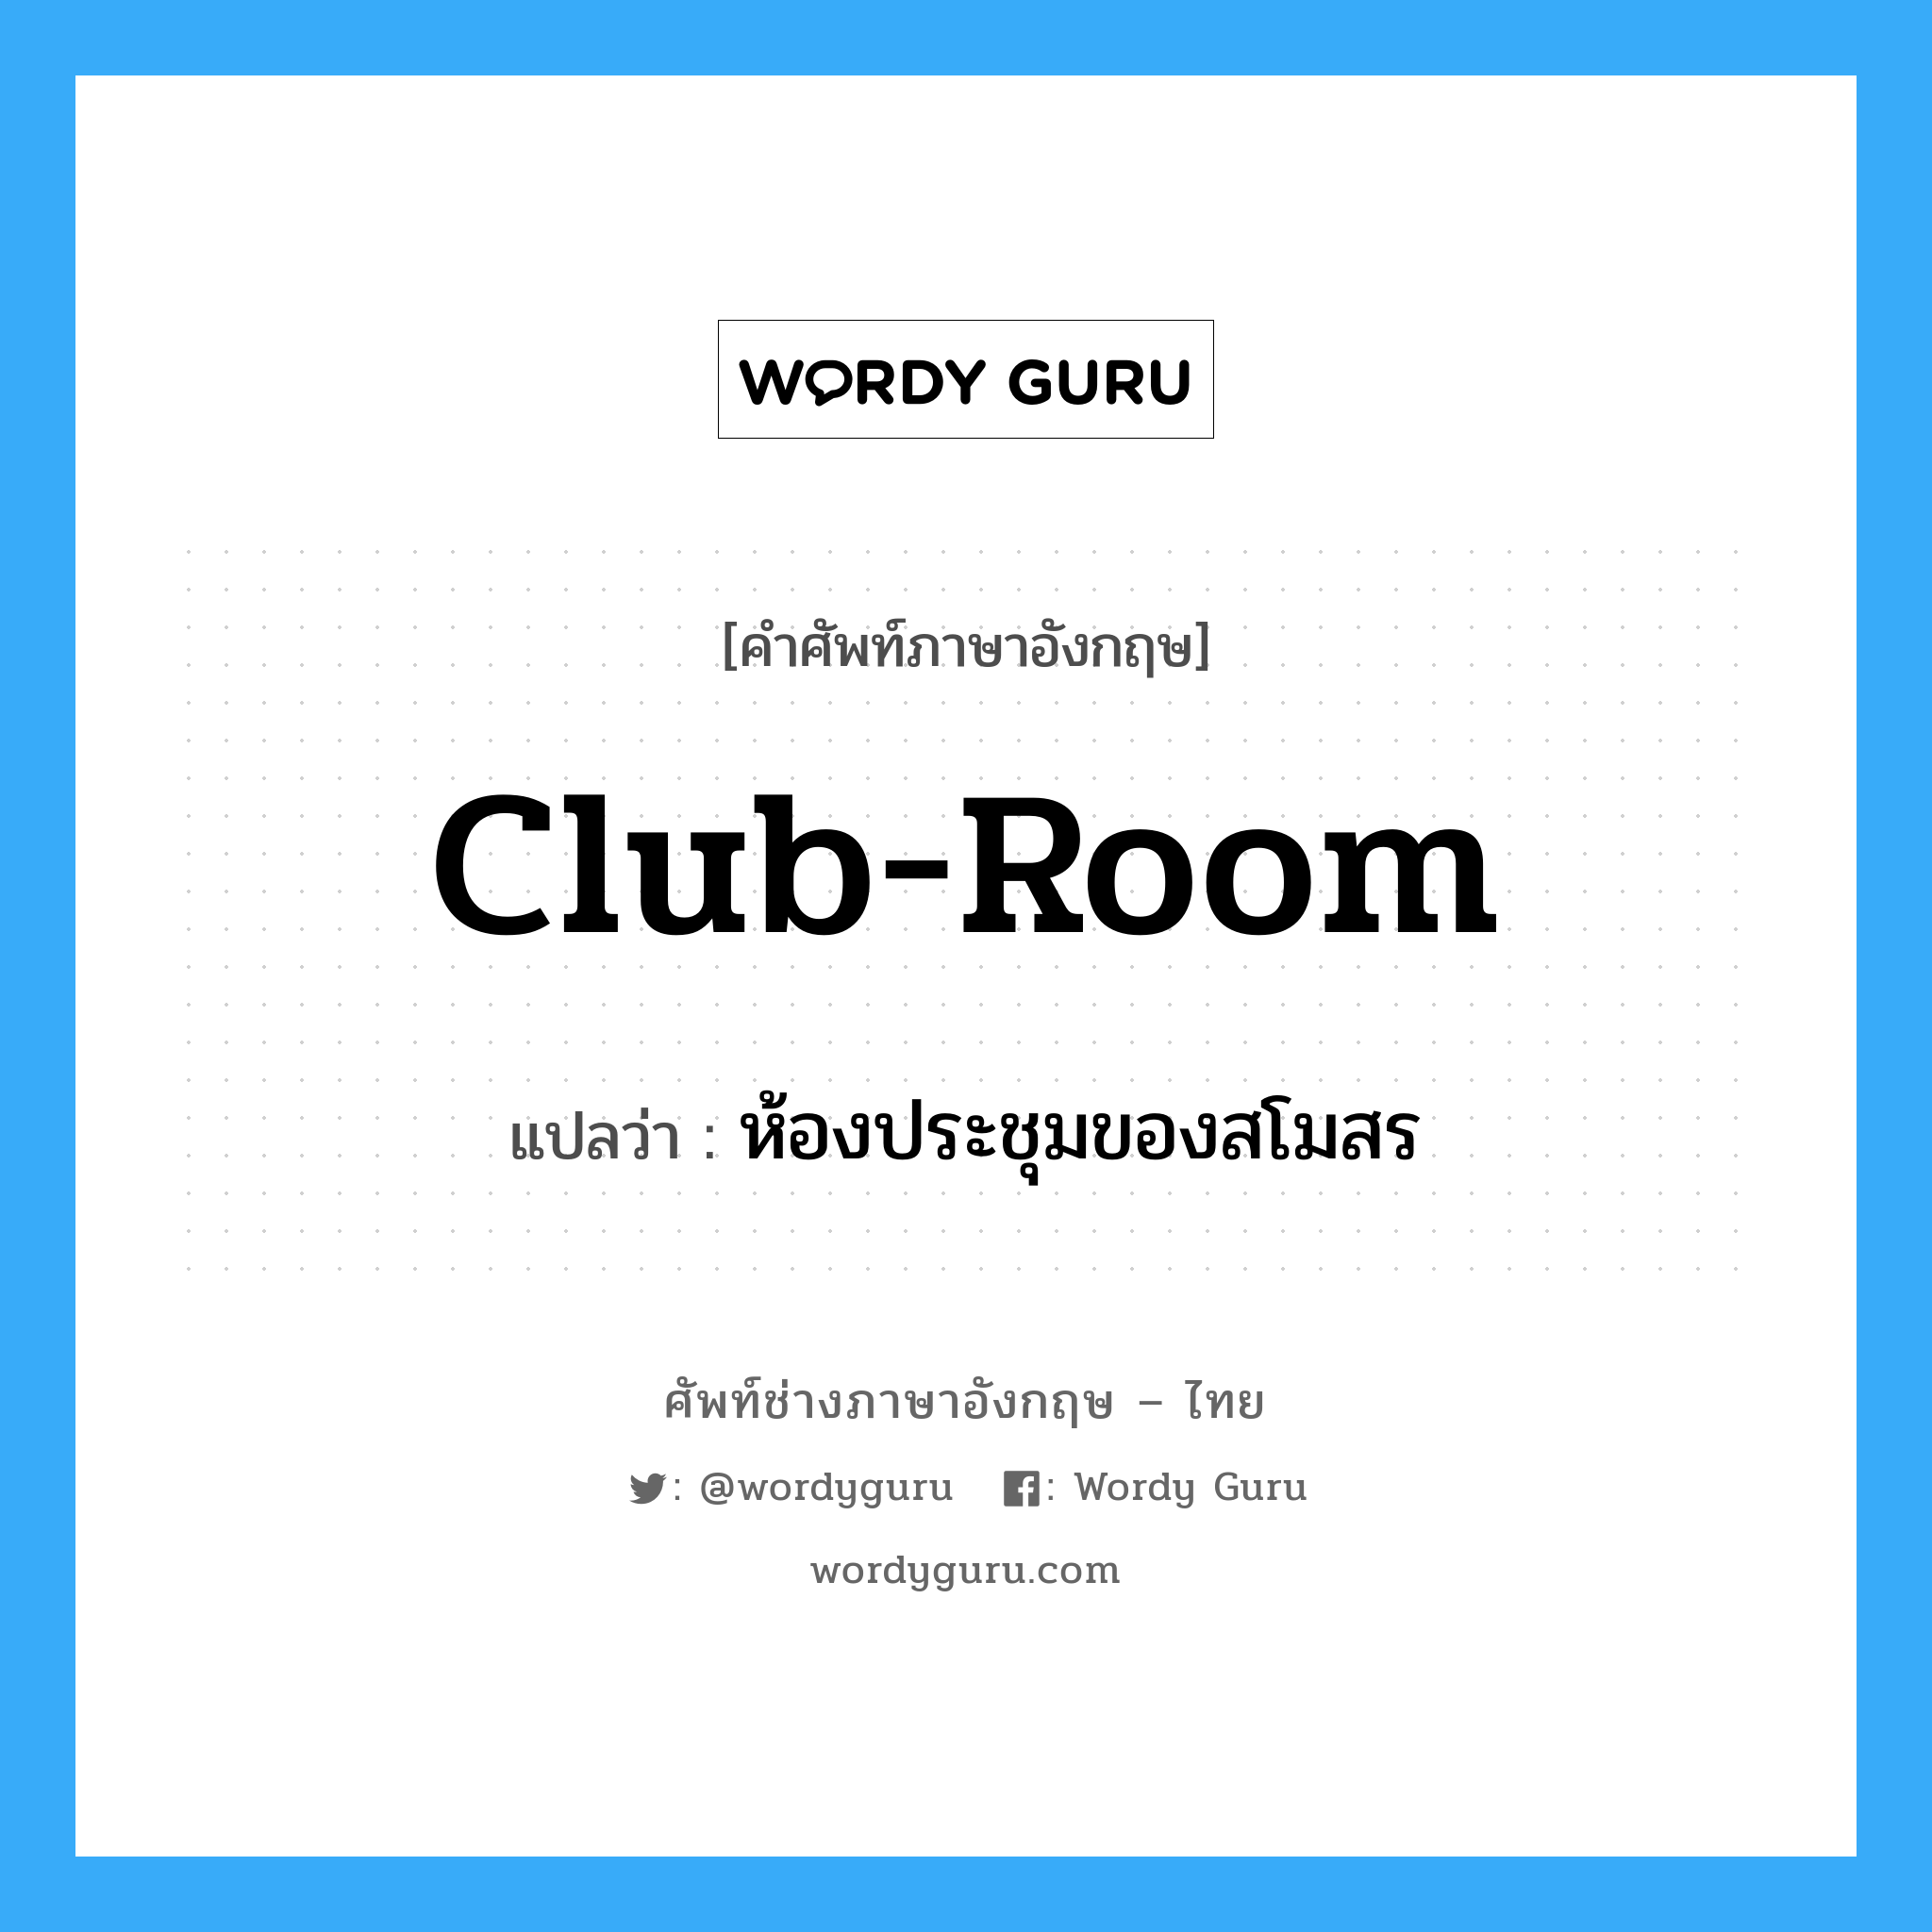 club-room แปลว่า?, คำศัพท์ช่างภาษาอังกฤษ - ไทย club-room คำศัพท์ภาษาอังกฤษ club-room แปลว่า ห้องประชุมของสโมสร